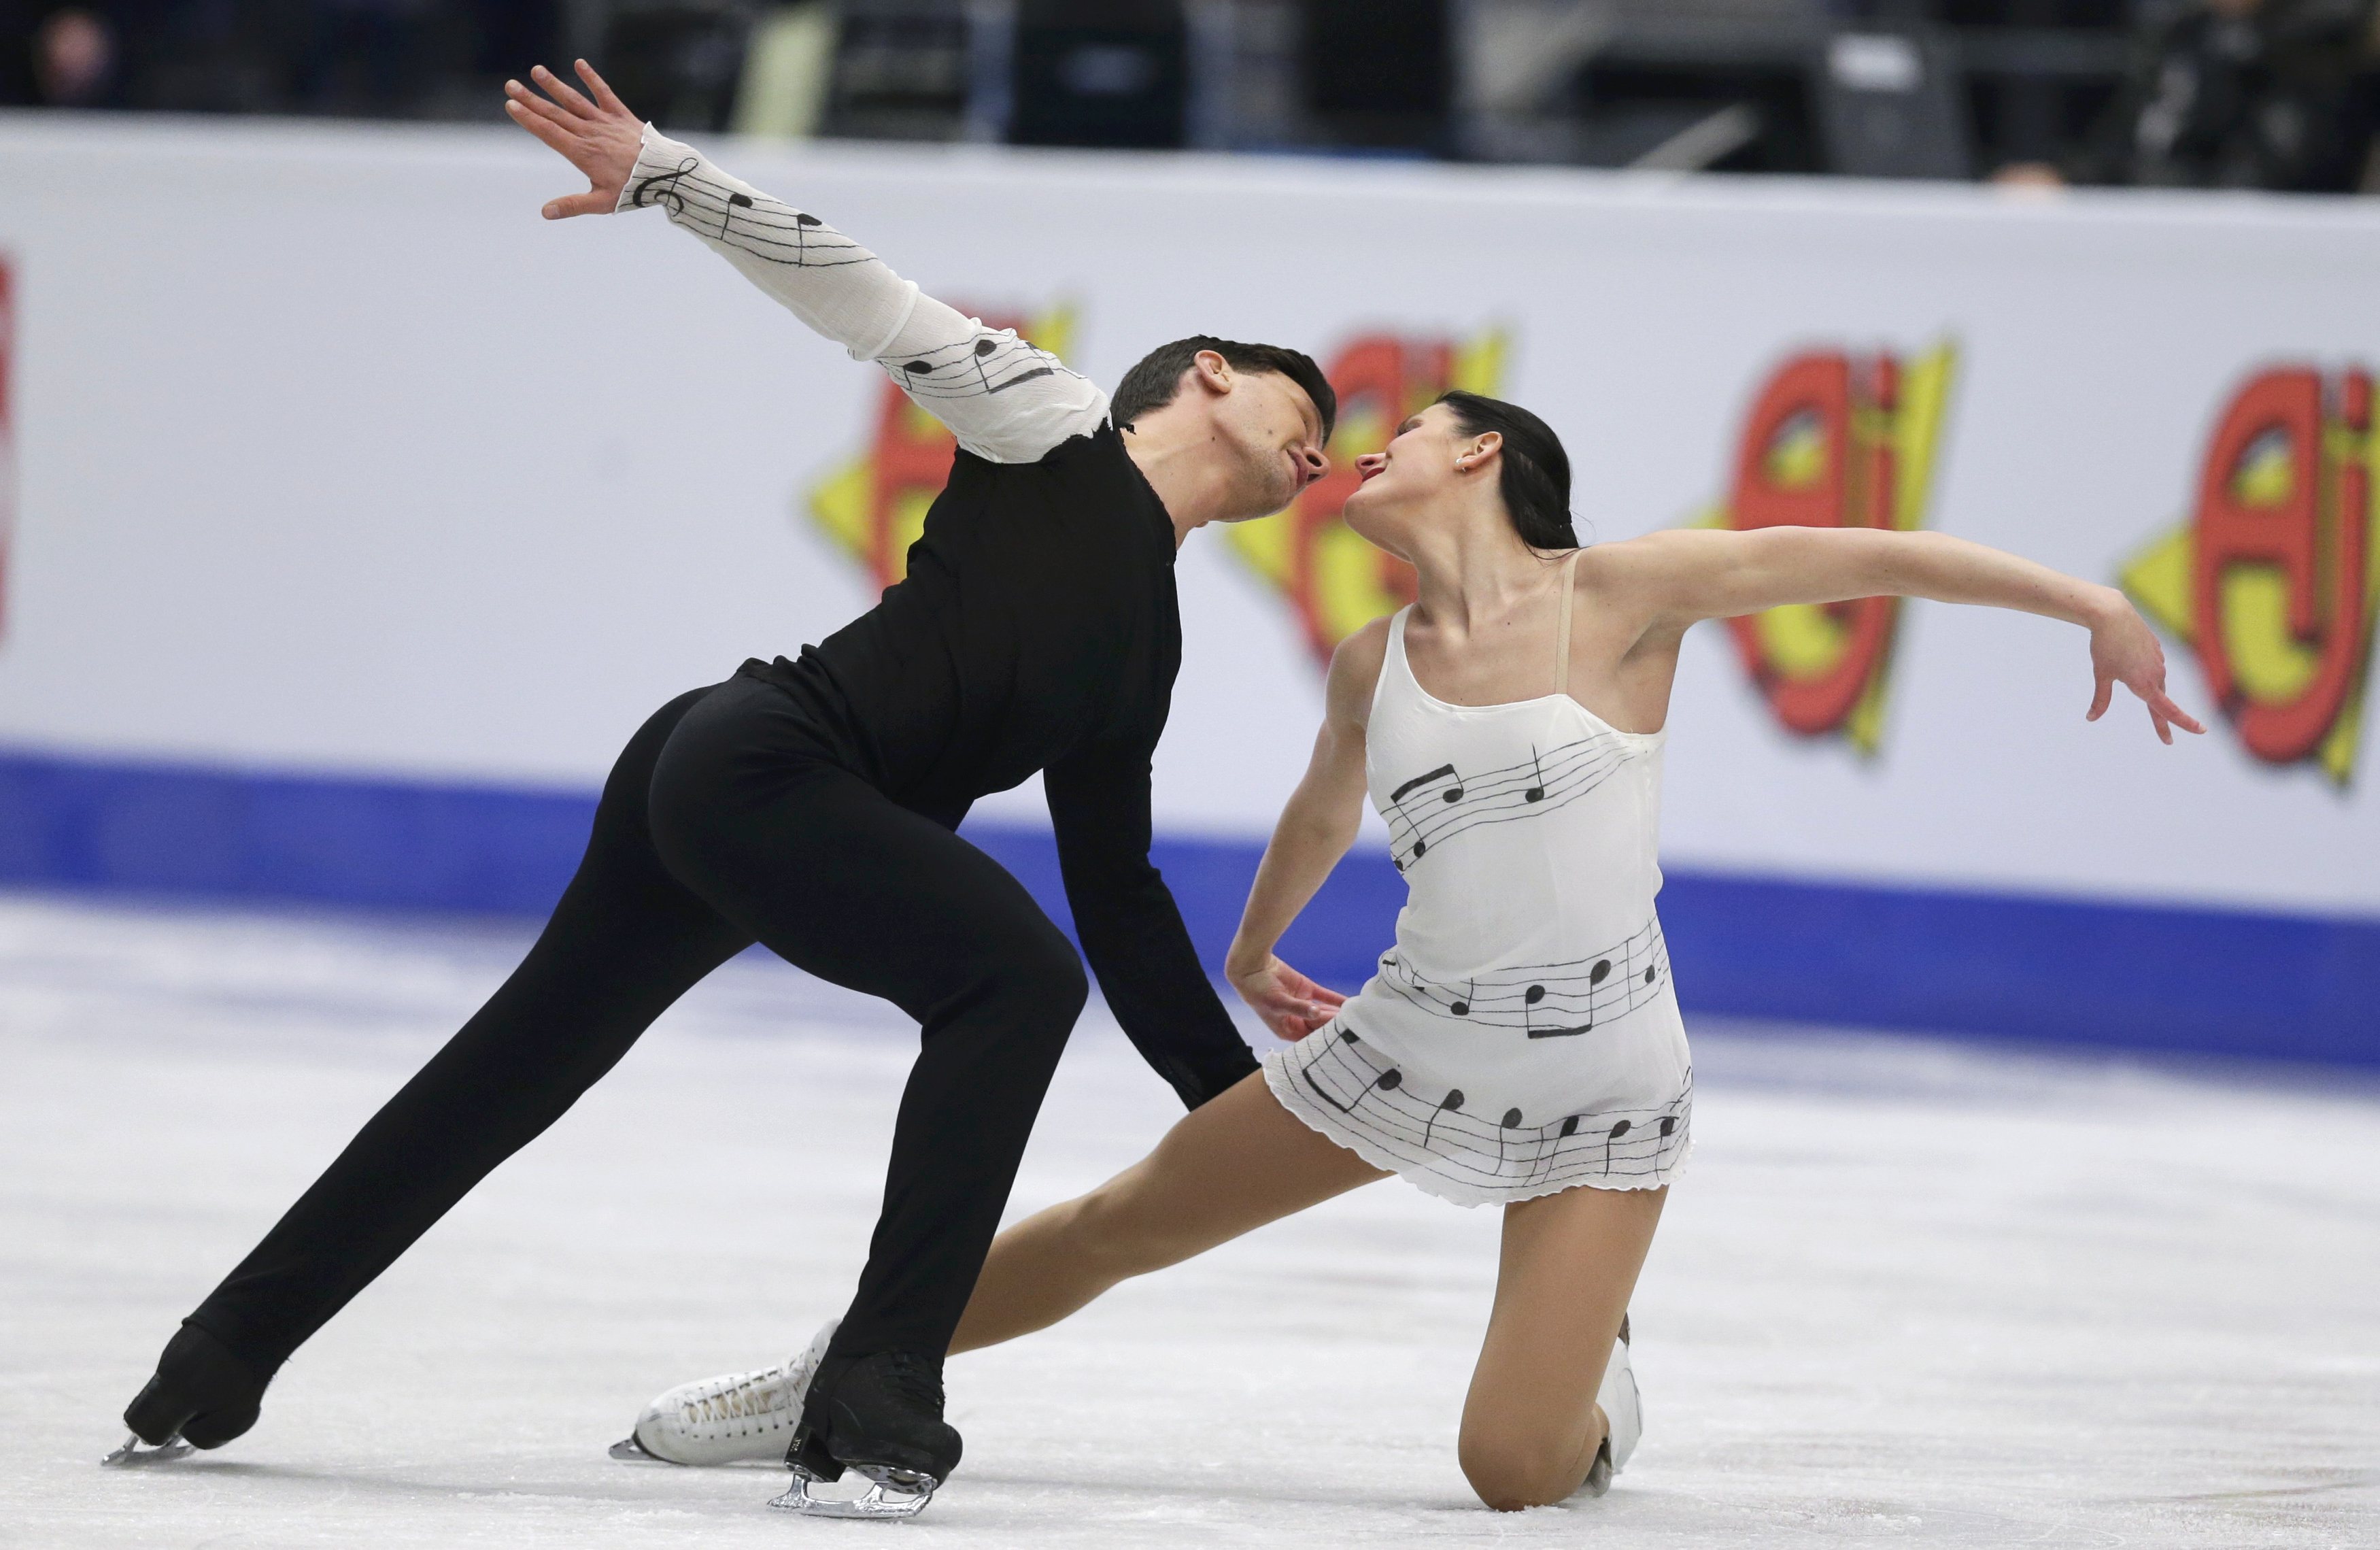 بطولة كأس الأمم الأوروبية 2017 للرقص الحر على الجليد (14)